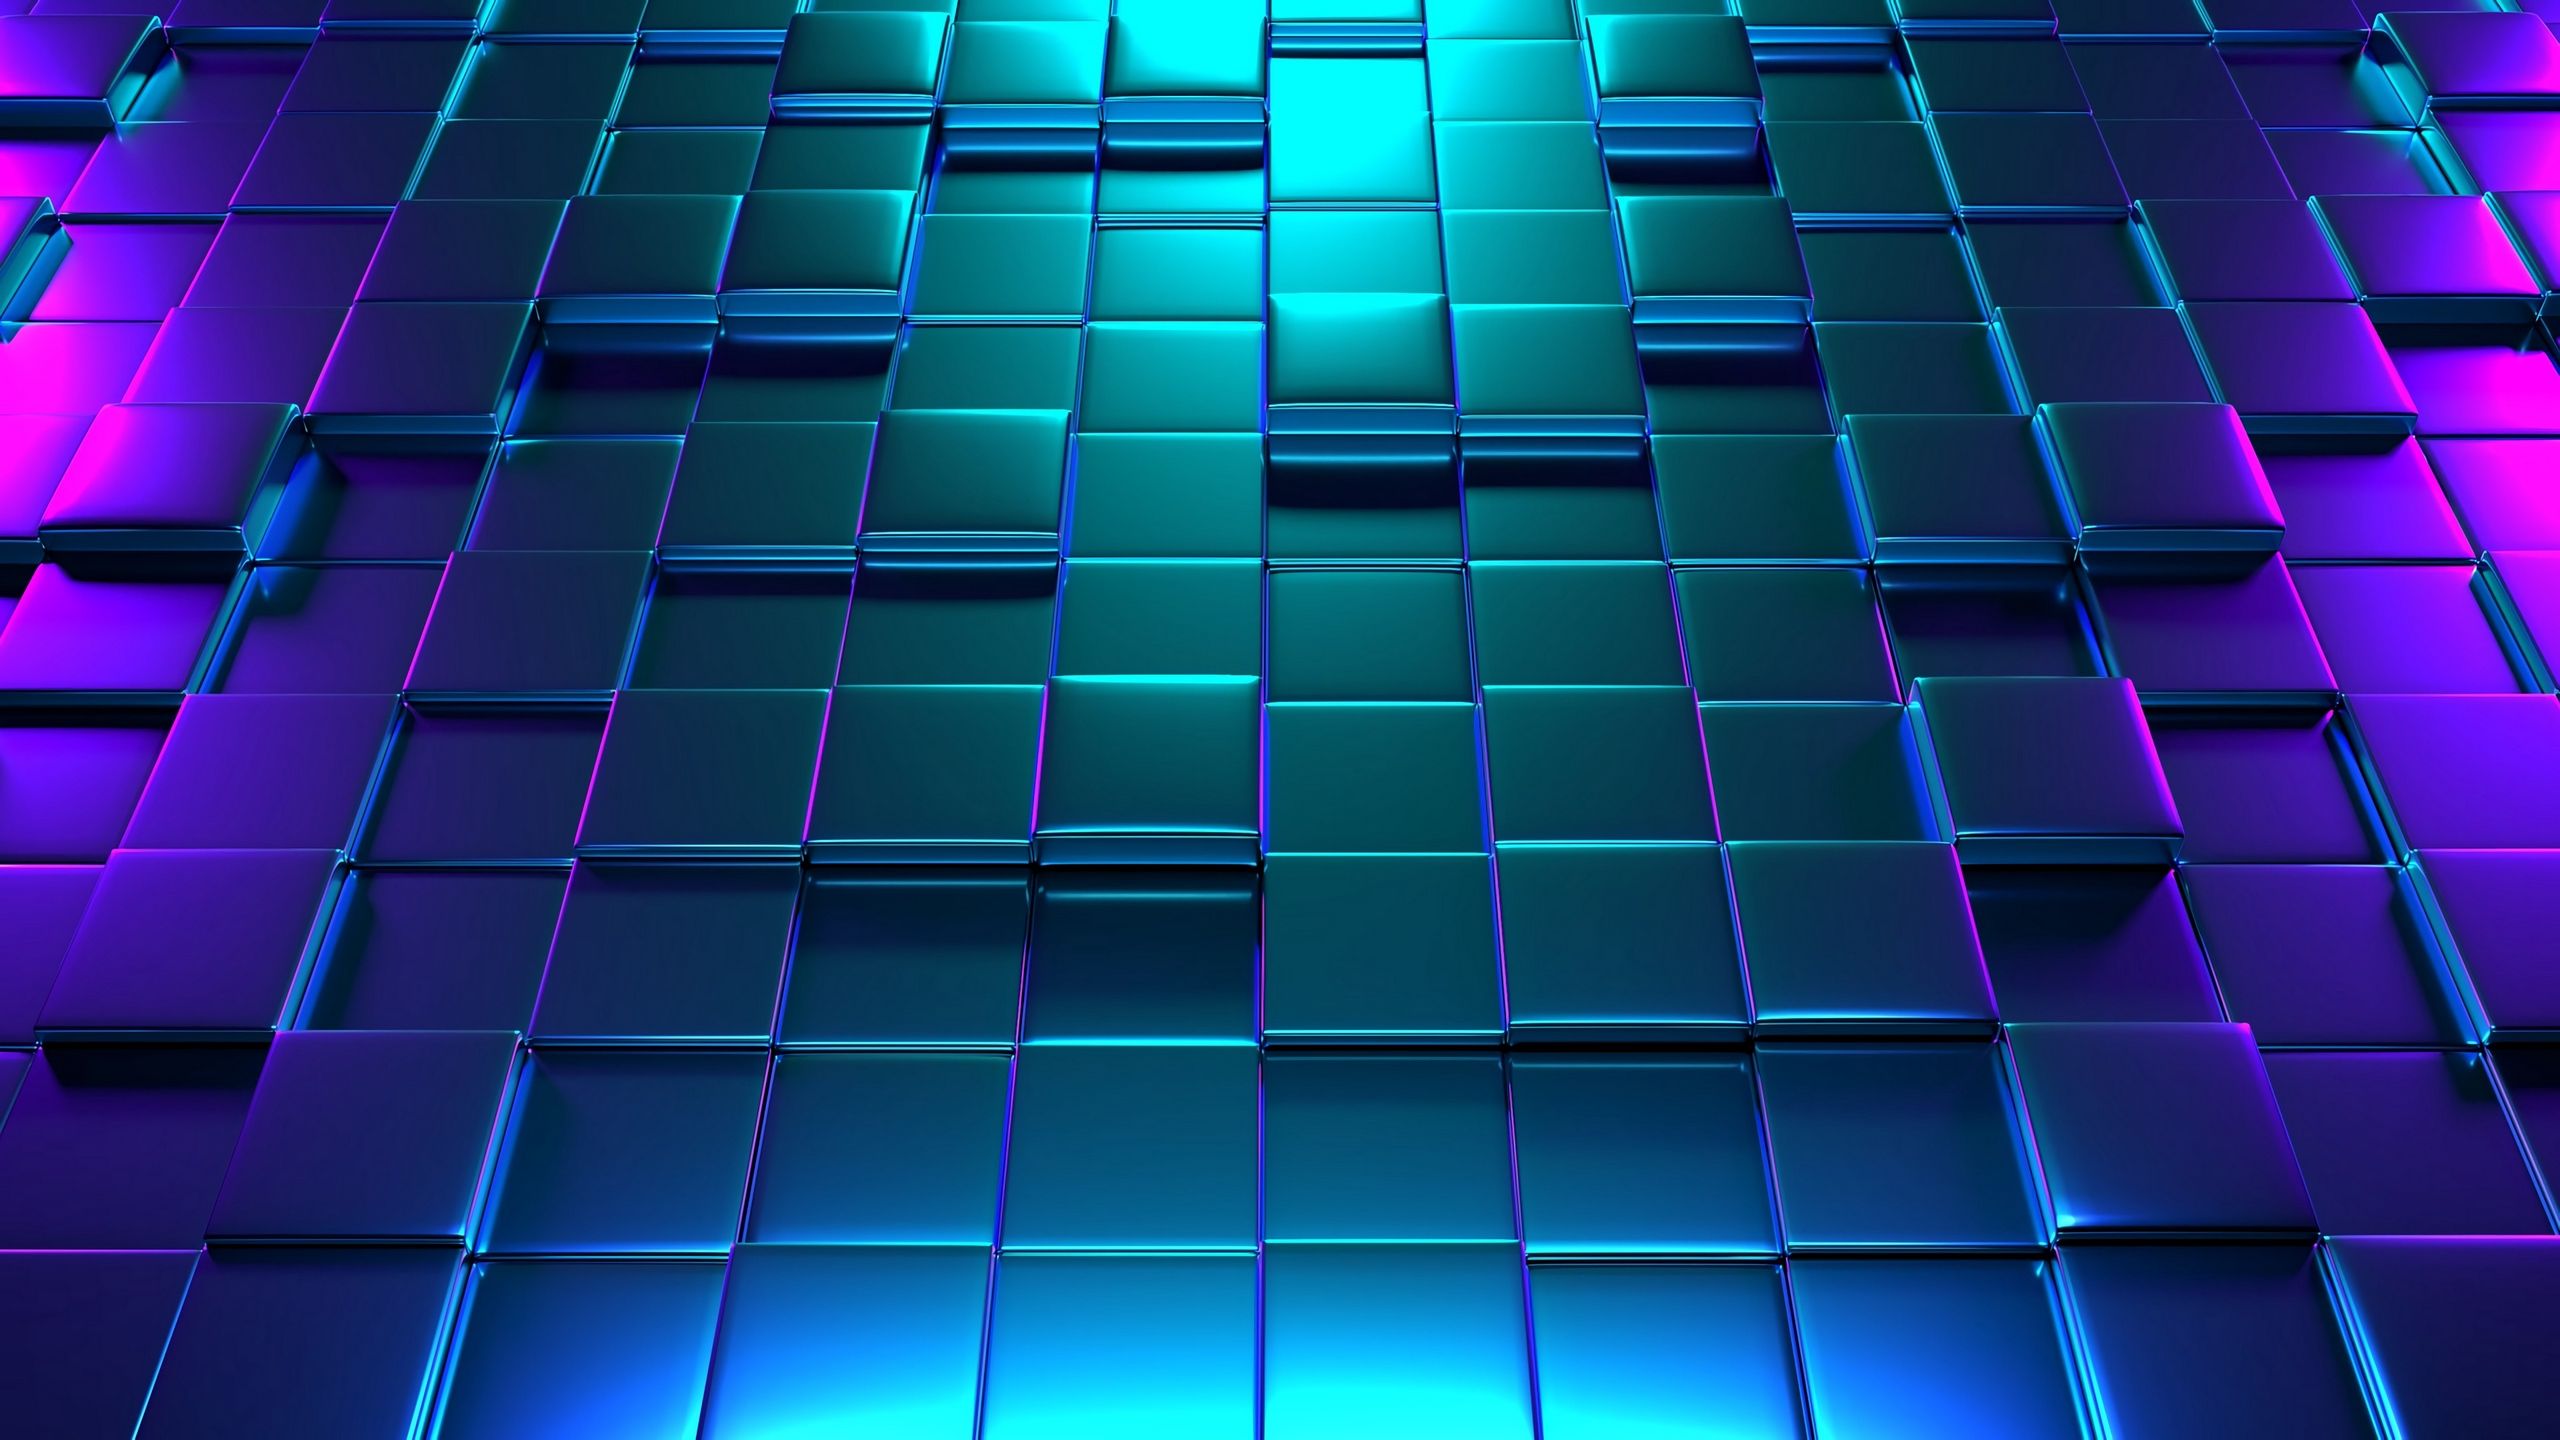 نمایه سه بعدی با ترکیب رنگ های سرد آبی و بنفش و سبز 